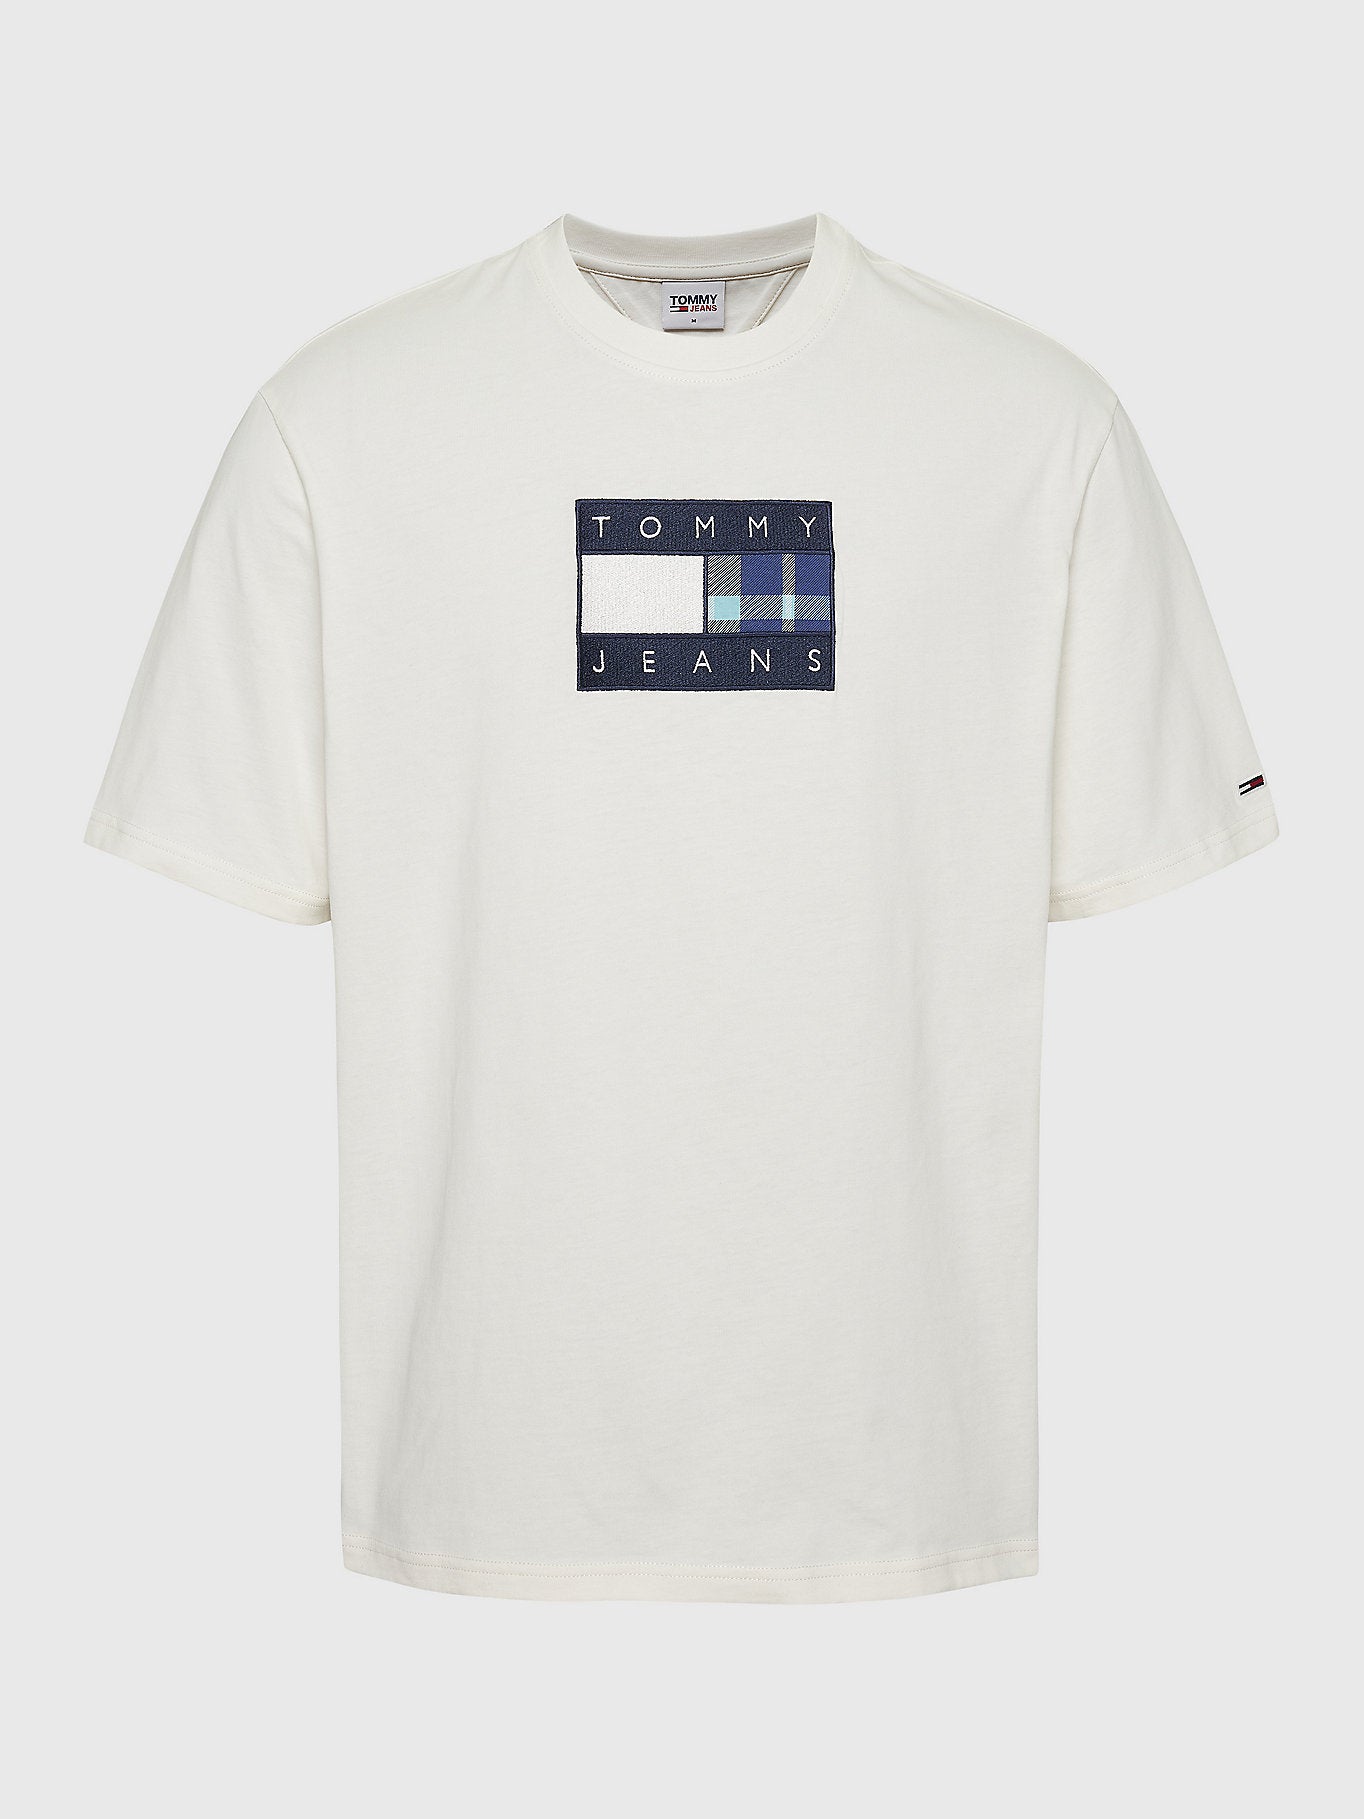 T-Shirt drapeau Tommy Jeans blanc pour homme I Georgespaul